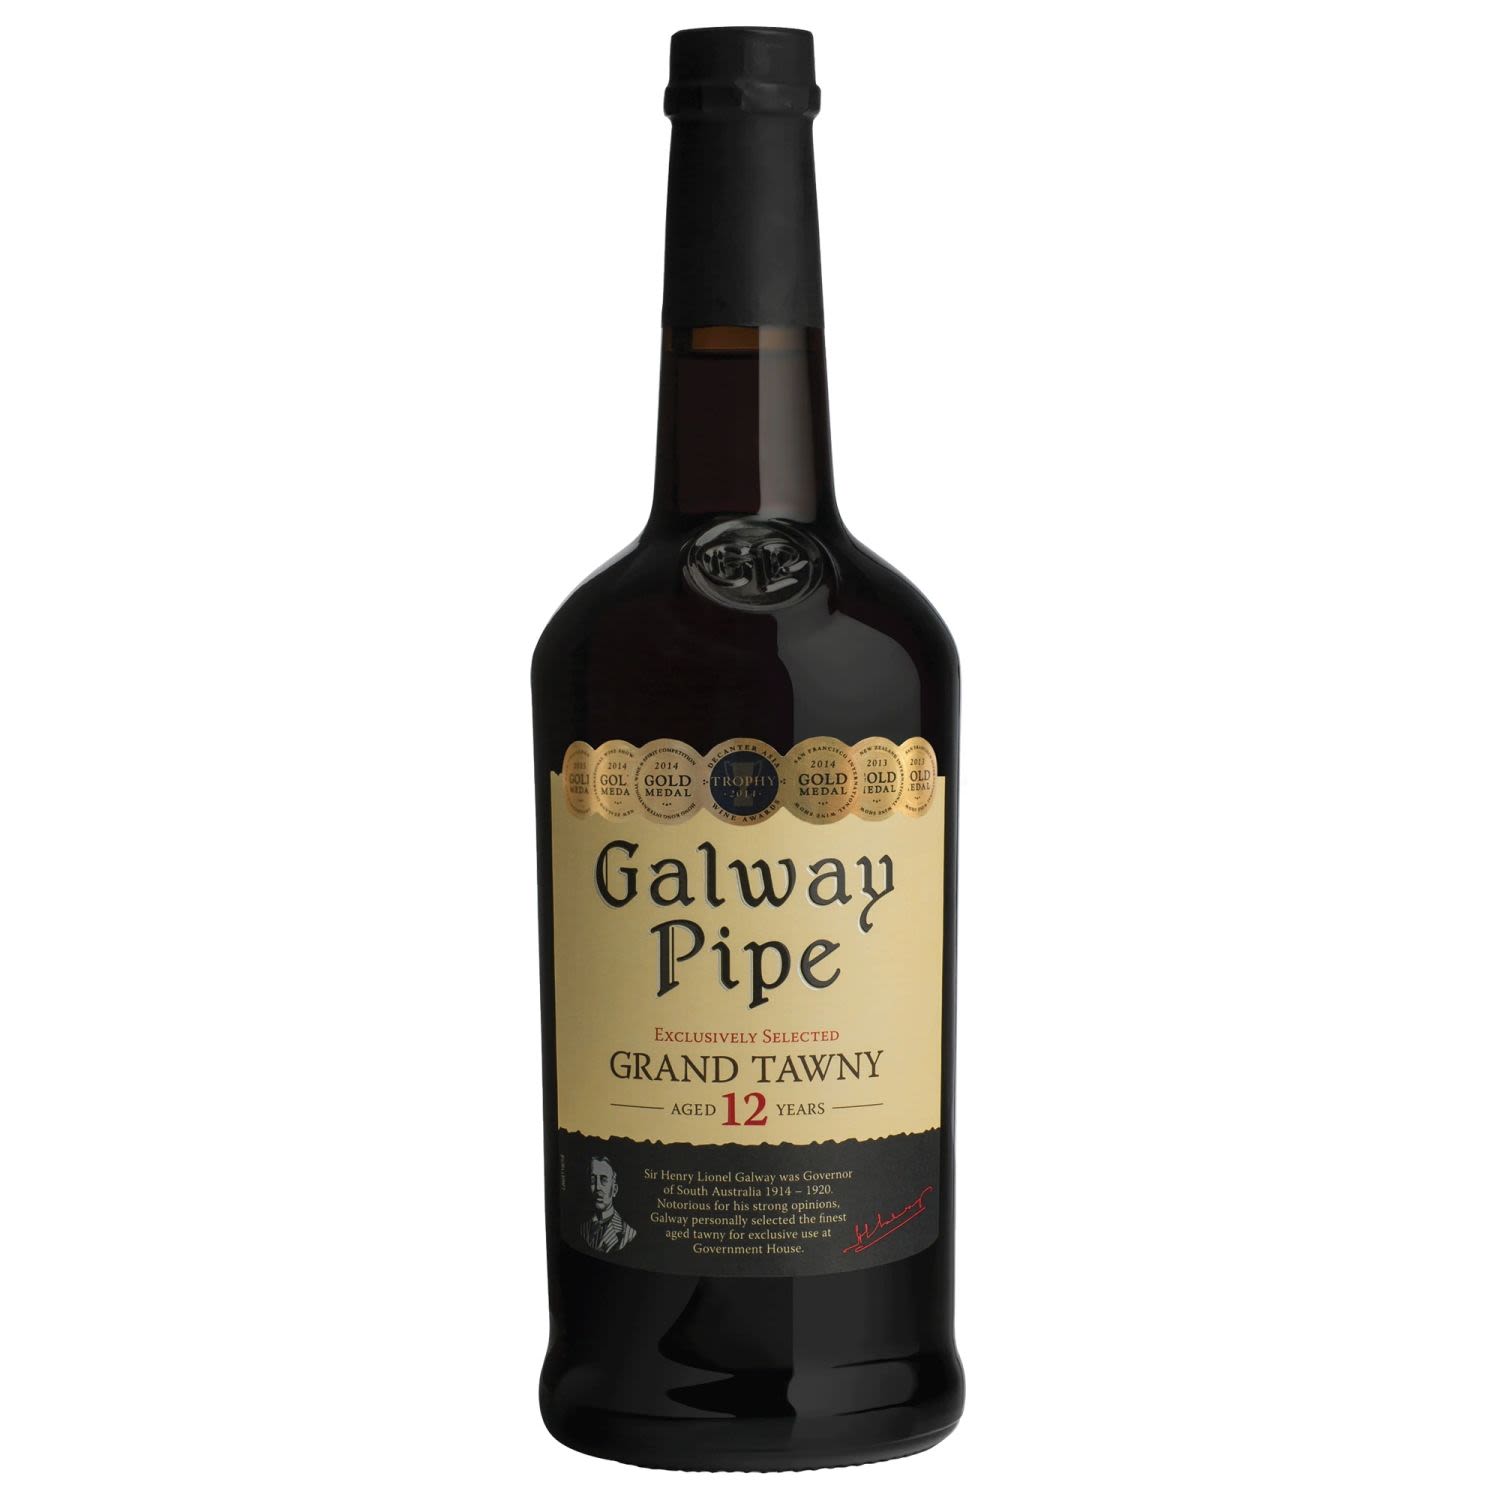 Galway Pipe 12 Year Old Grand Tawny<br /> <br />Alcohol Volume: 18.50%<br /><br />Pack Format: Bottle<br /><br />Standard Drinks: 11</br /><br />Pack Type: Bottle<br /><br />Country of Origin: Australia<br /><br />Region: South Eastern Australia<br /><br />Vintage: NV<br />